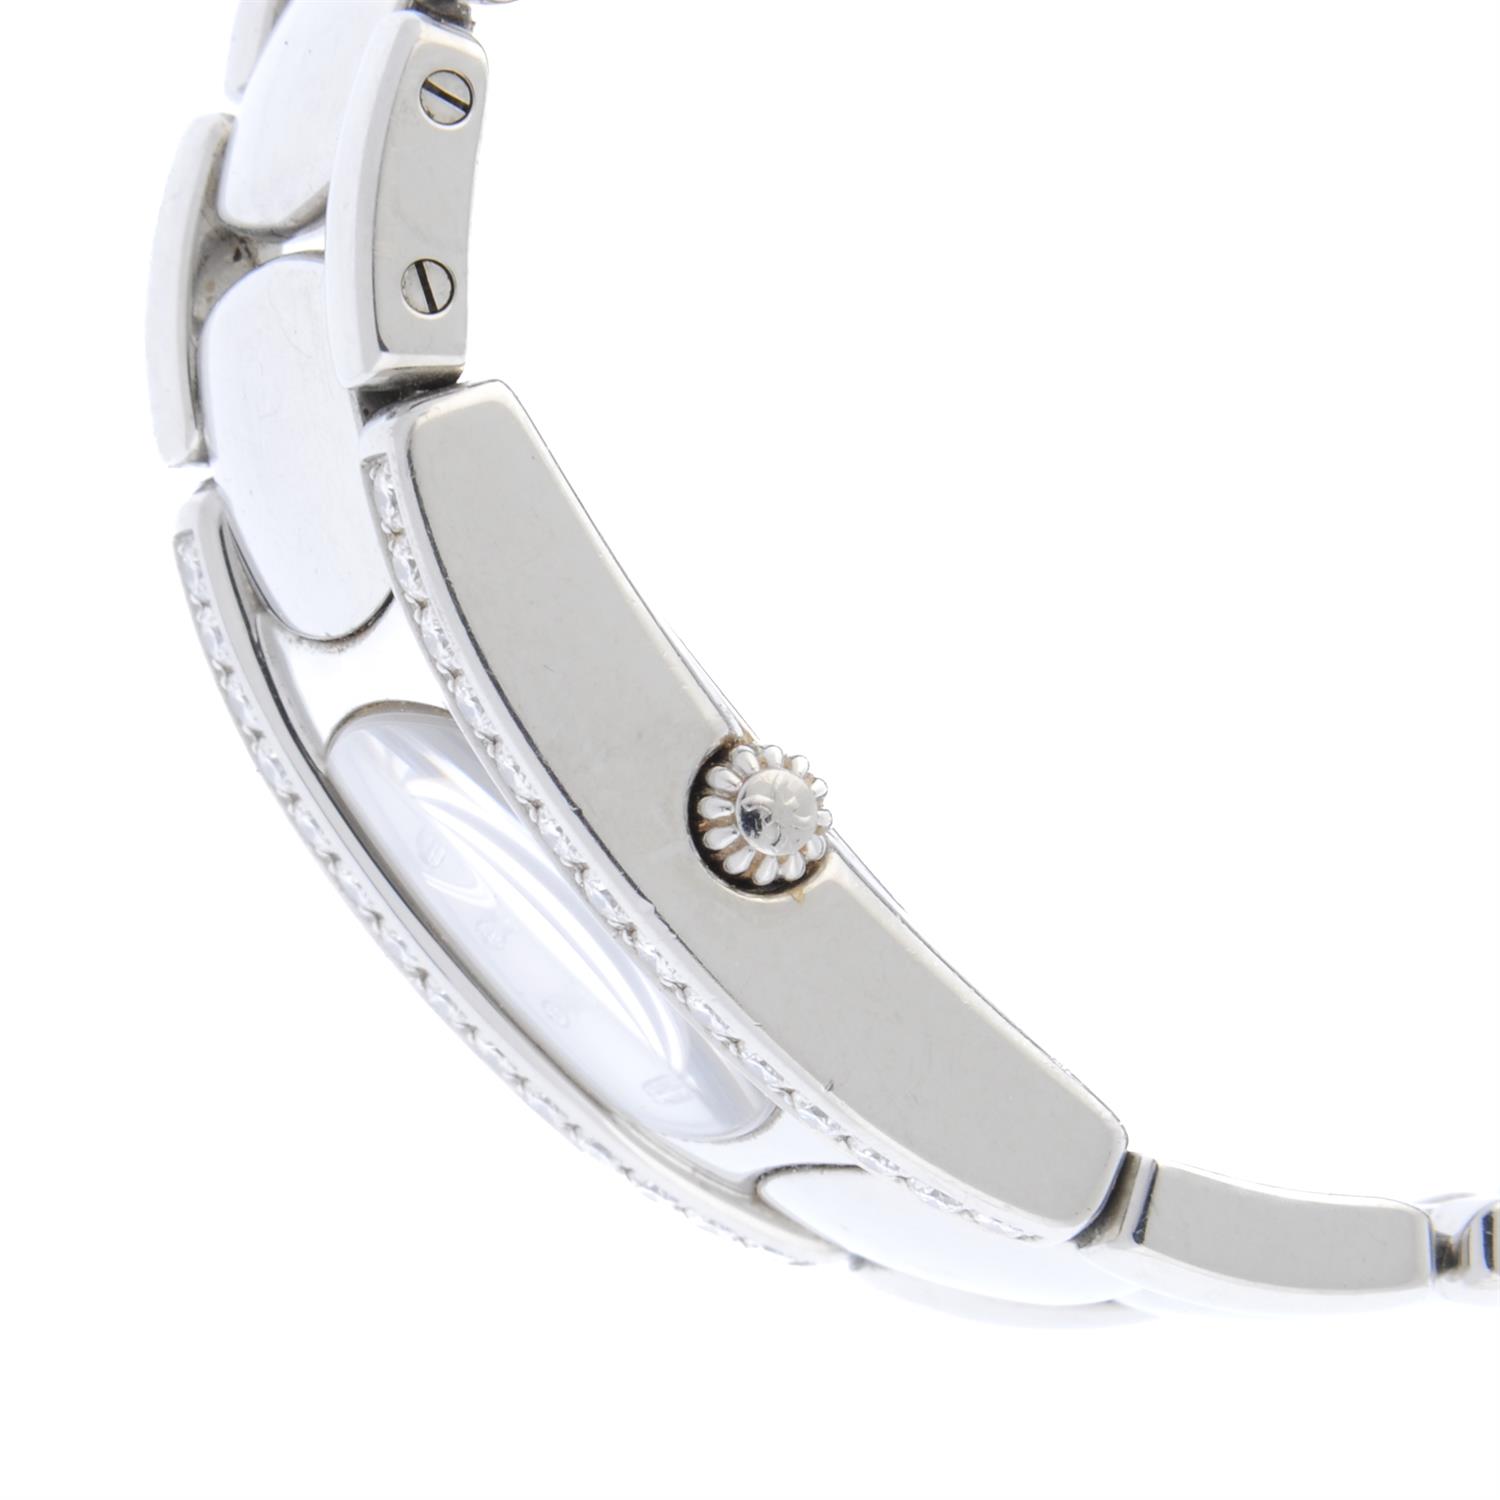 Ebel - a Beluga watch, 19mm. - Image 3 of 3